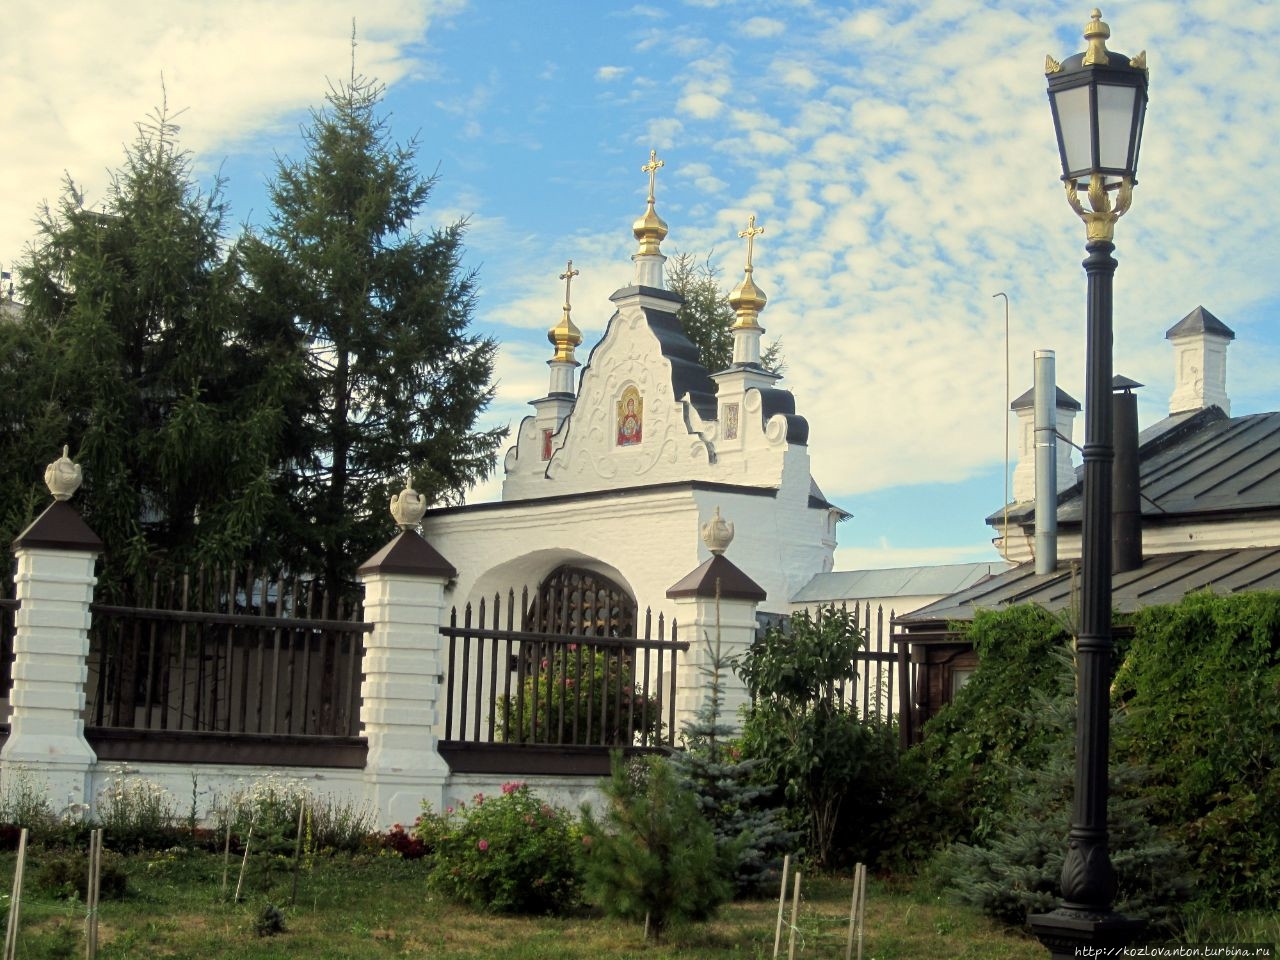 Так выглядят Северные святые ворота внутри Кремля.